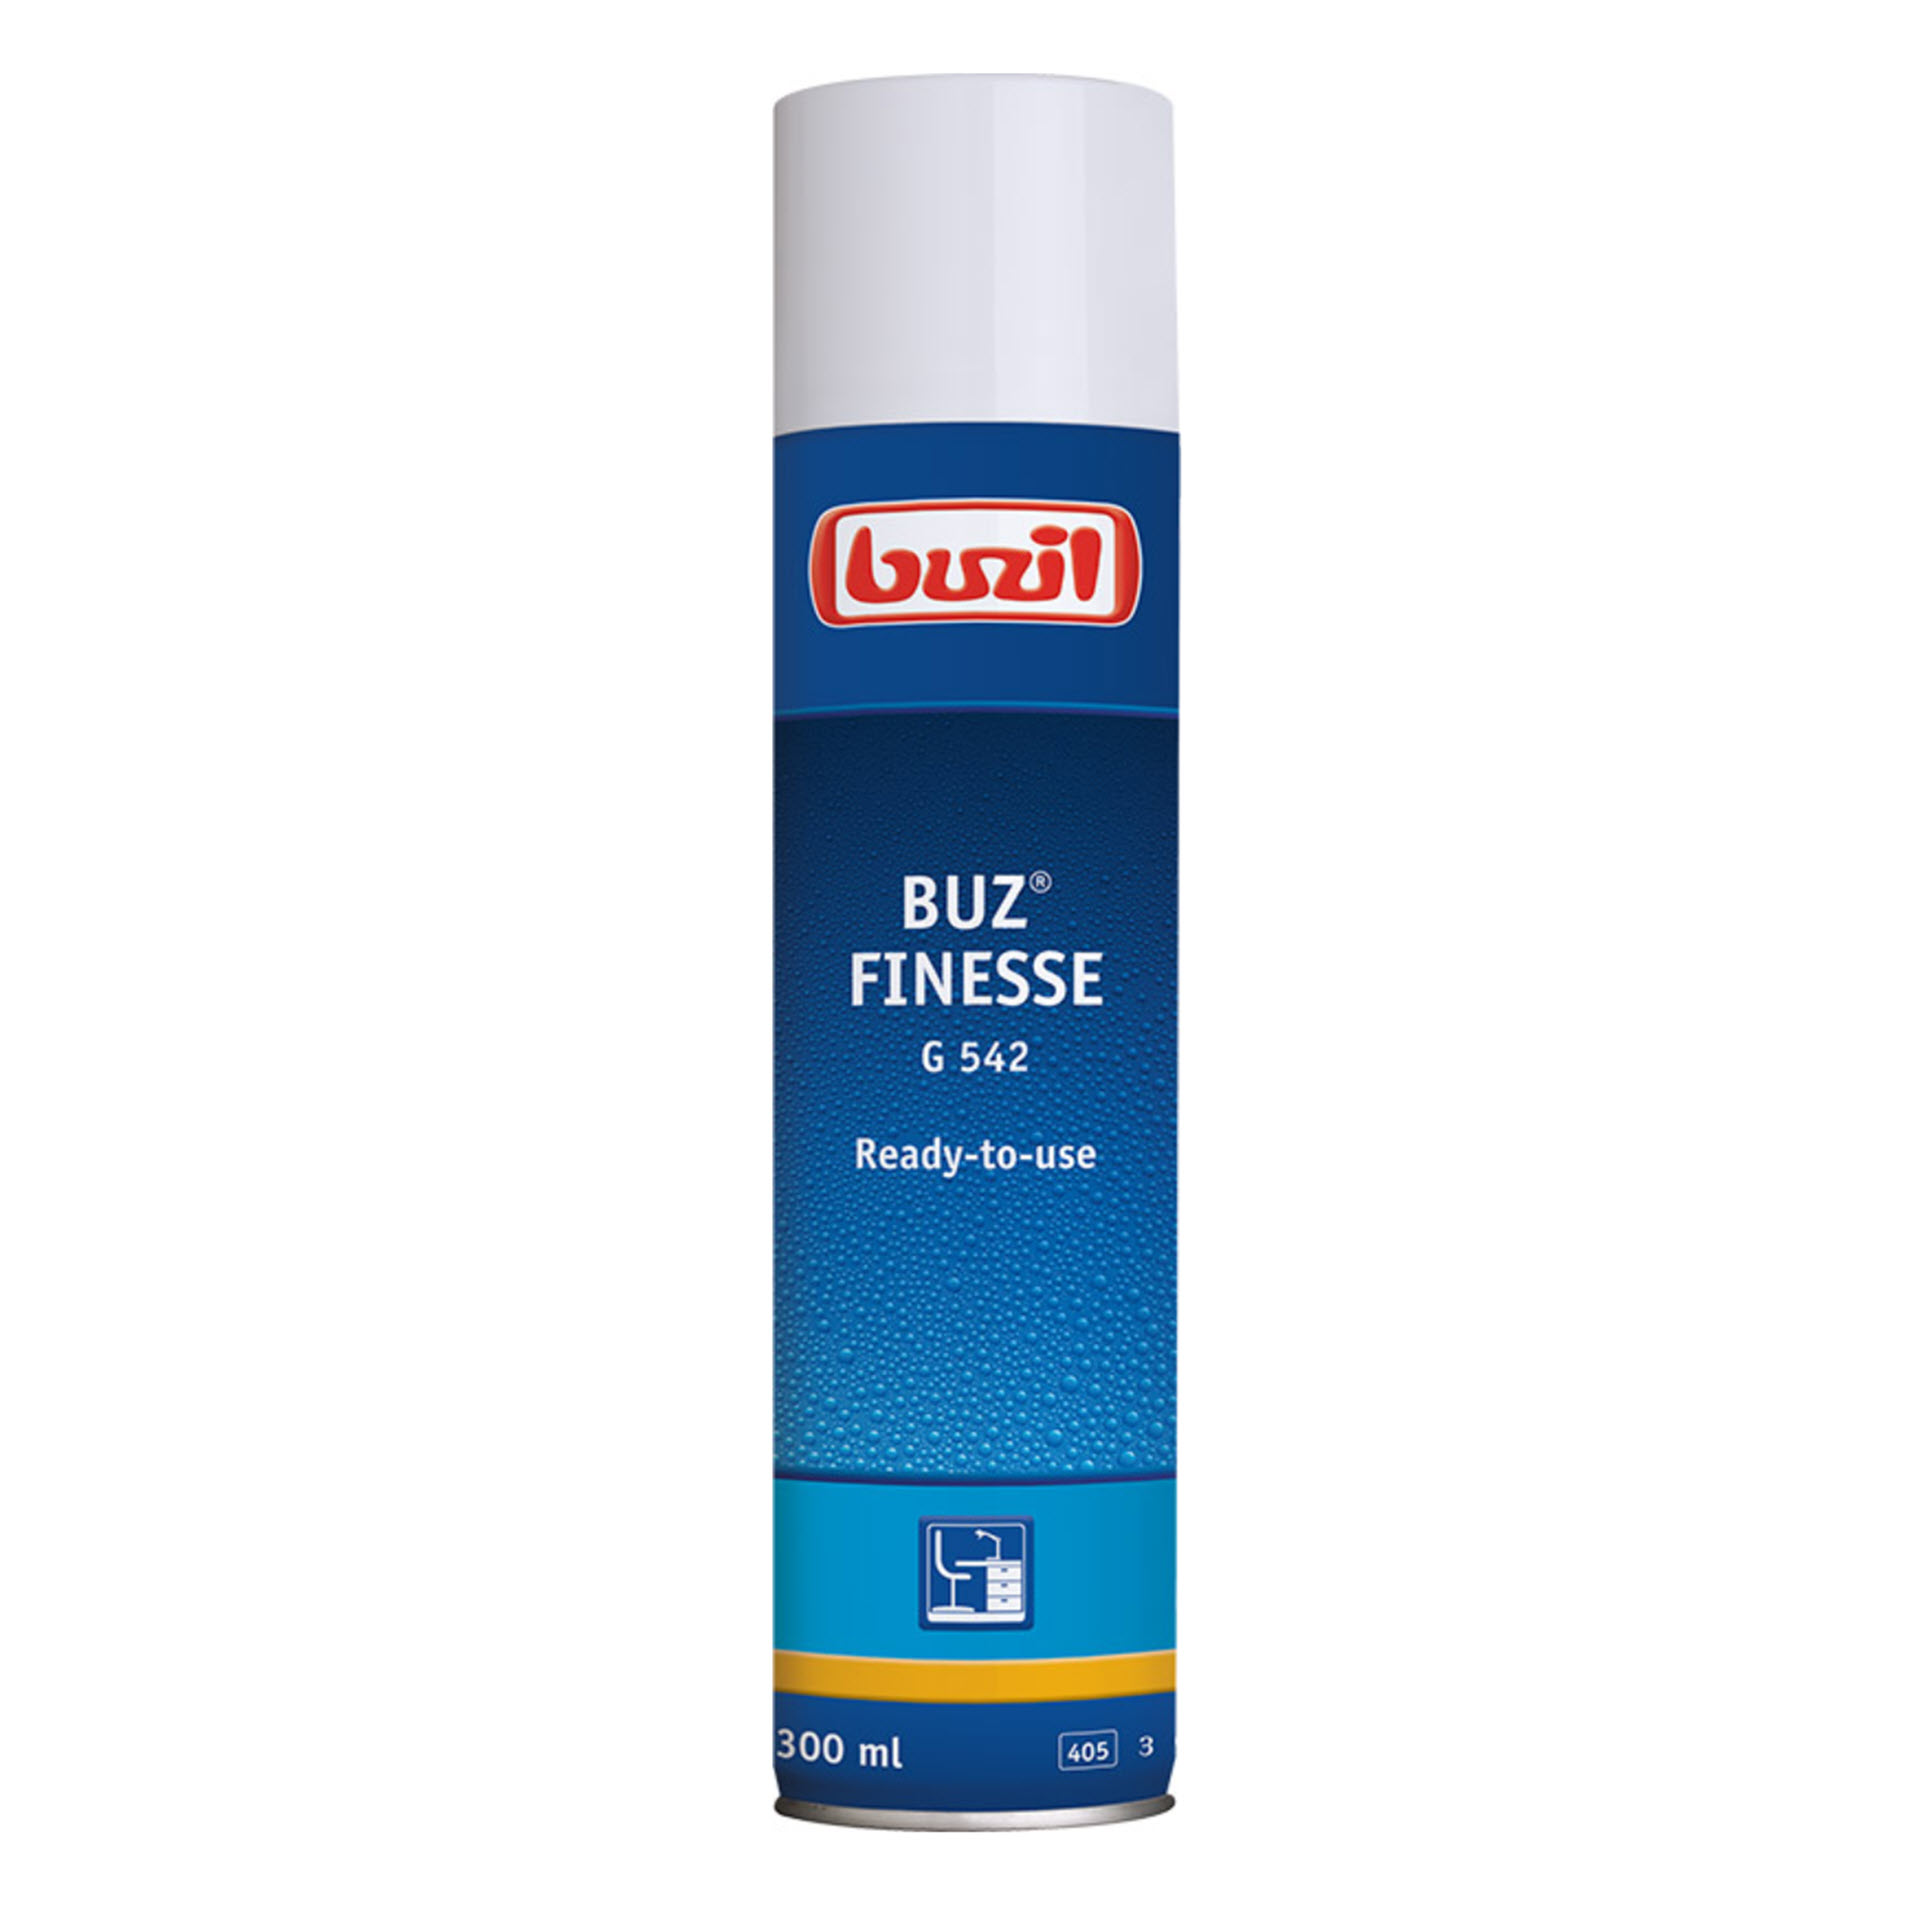 Buzil BUZ® FINESSE G 542 - Möbel- und Spezialpflege - 300 ml Dose